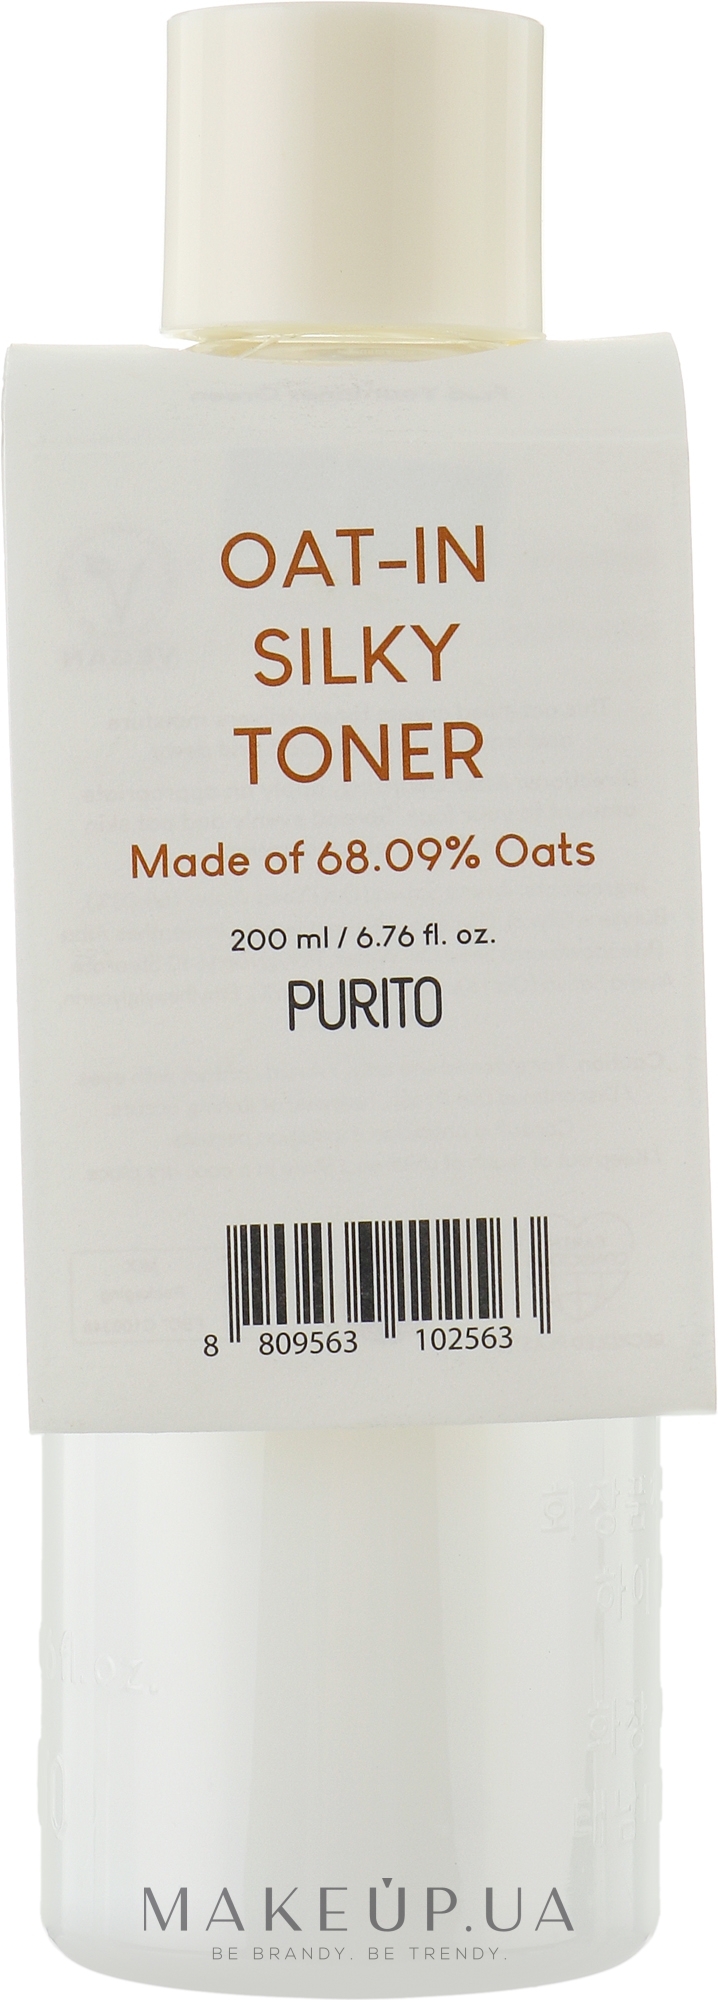 Заспокійливий тонер на основі насіння вівса - Purito Oat-in Silky Toner — фото 200ml